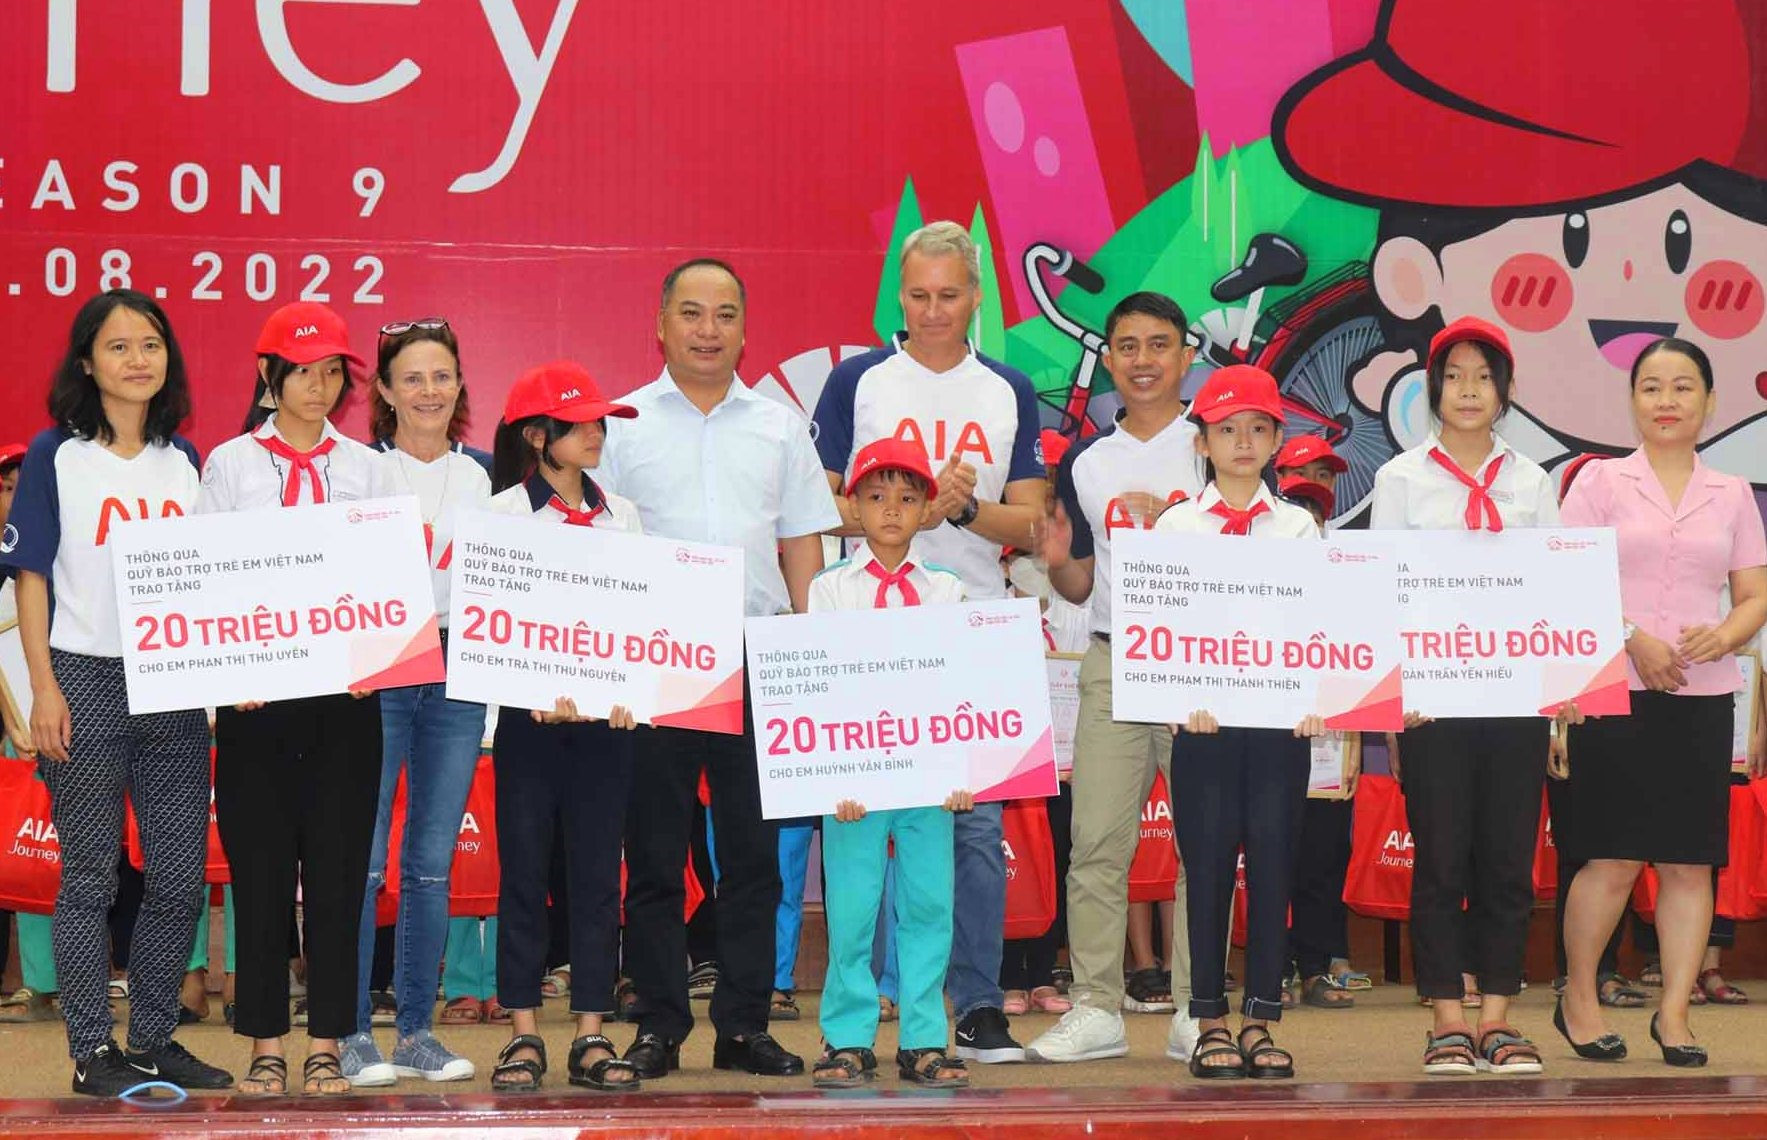 AIA Việt Nam trao tặng 5 hợp đồng bảo hiểm nhân thọ trị giá 20 triệu/hợp đồng cho 5 trẻ em khó khăn tại Quảng Nam. Ảnh: HOÀNG LIÊN